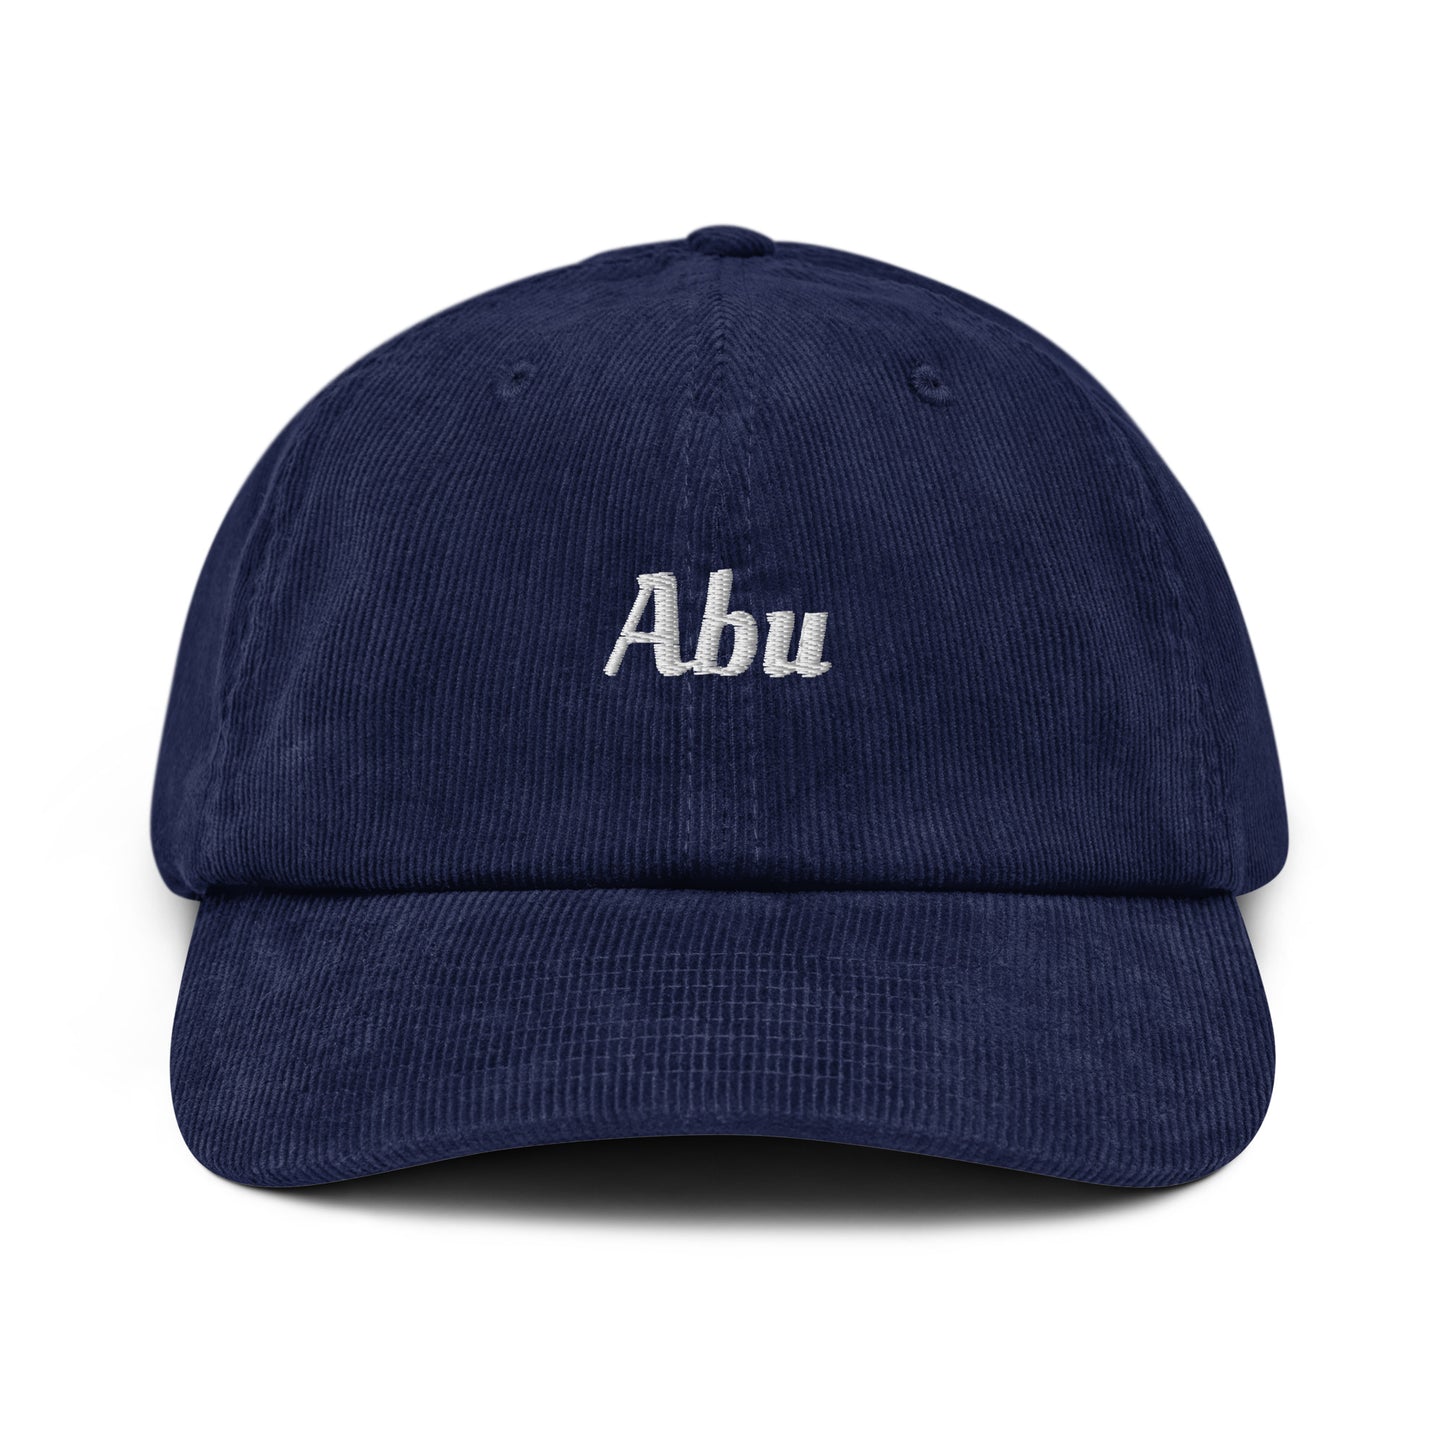 Abu Corduroy Hat